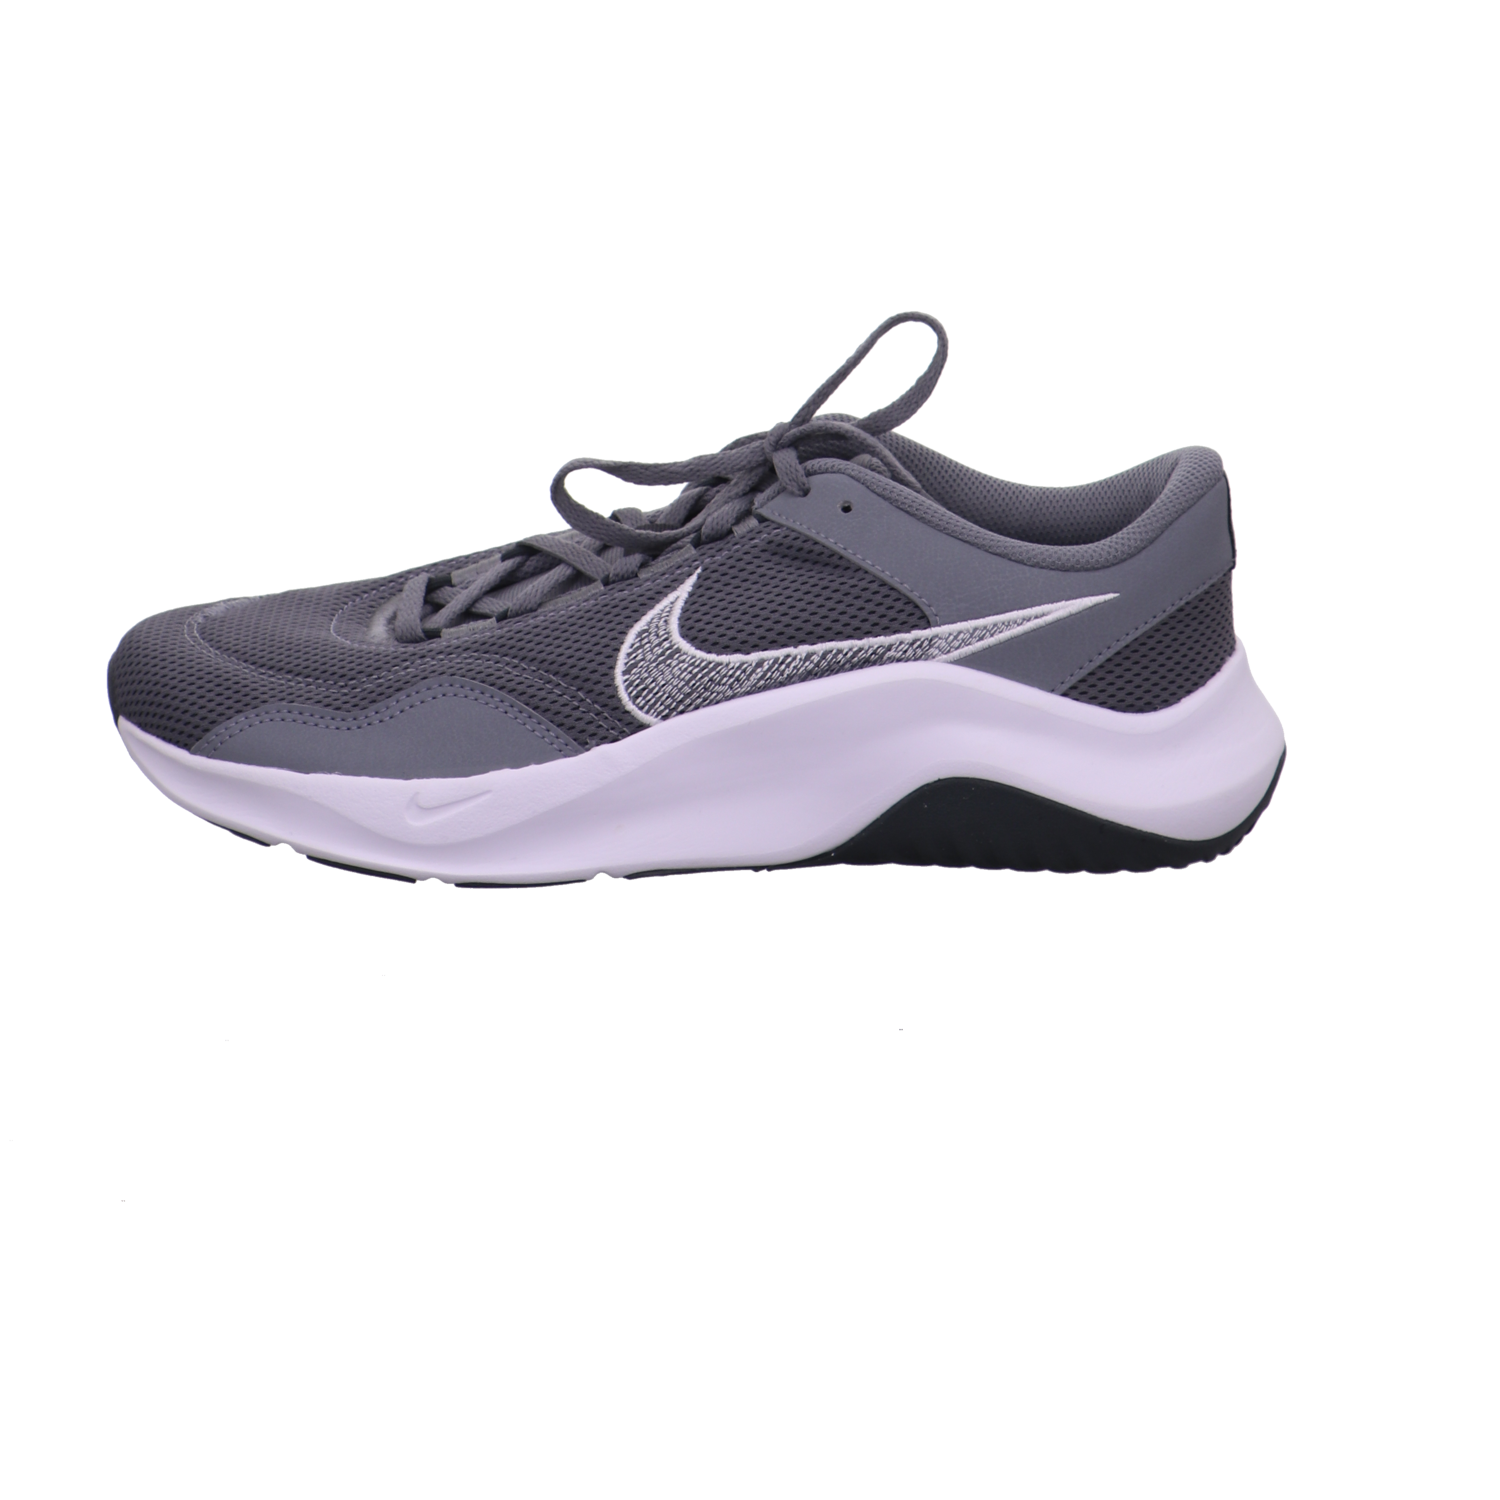 Nike Sneaker grau kombi Bild1